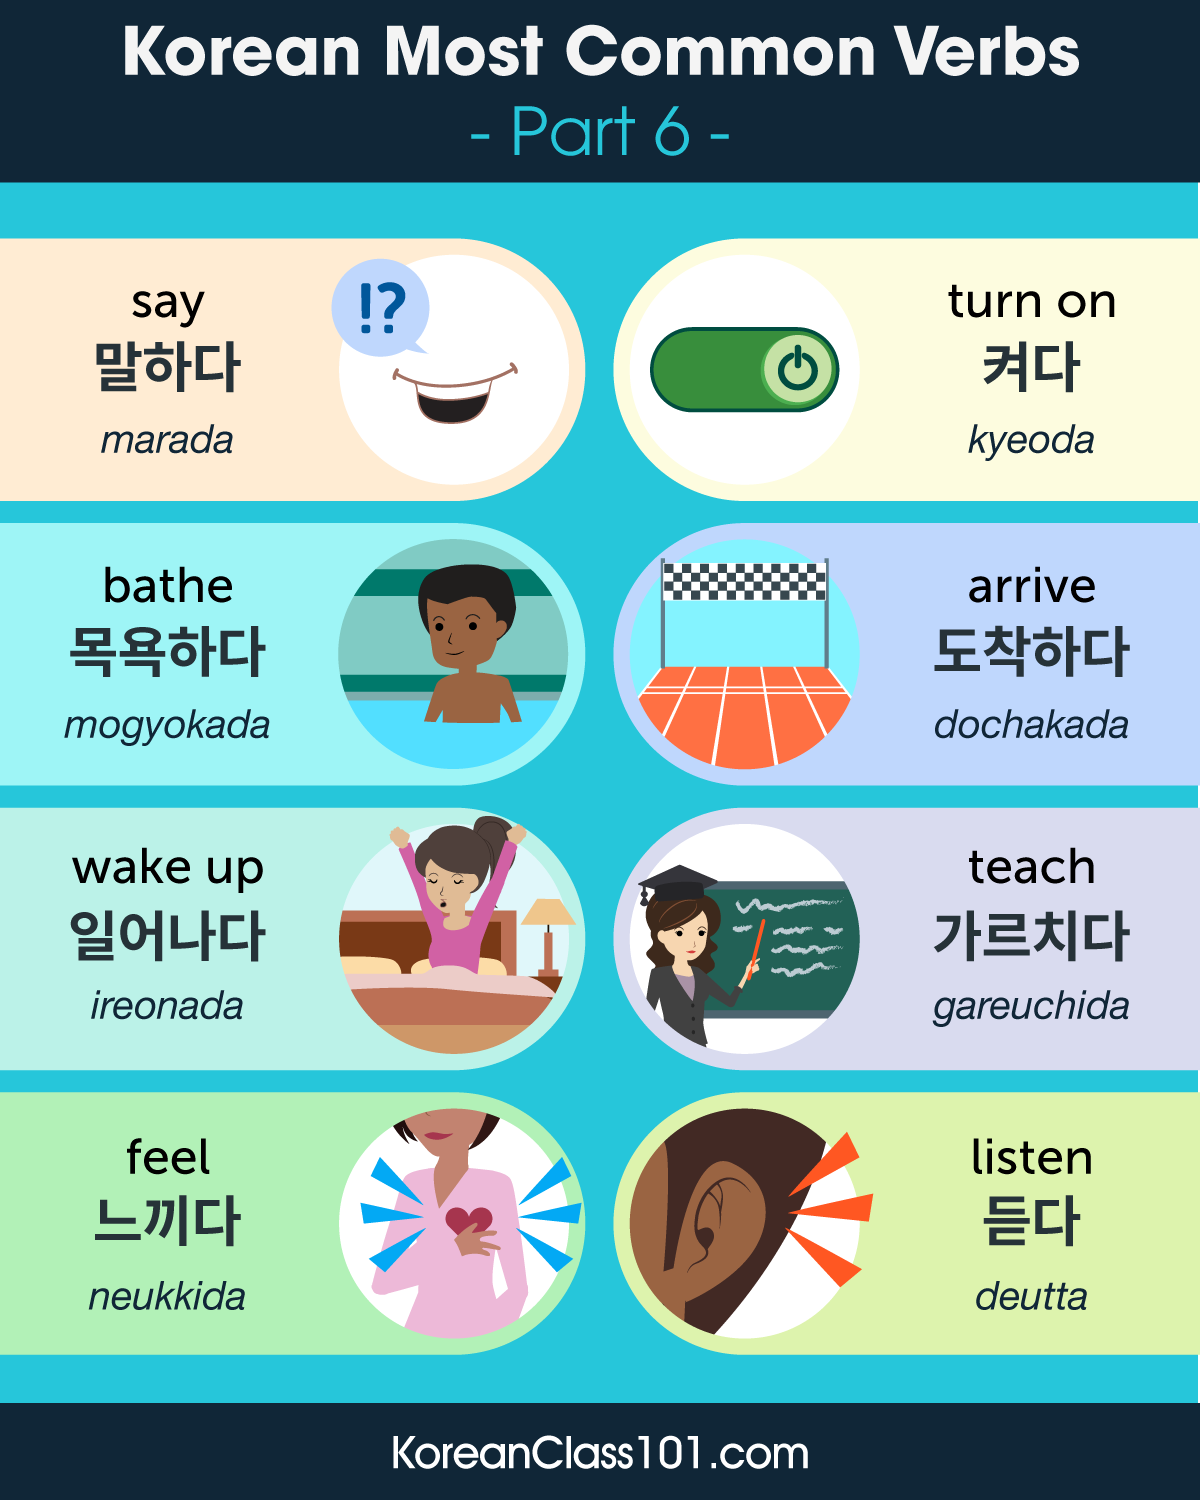 learn-korean-koreanclass101-want-more-korean-vocabulary-try-koreanclass101